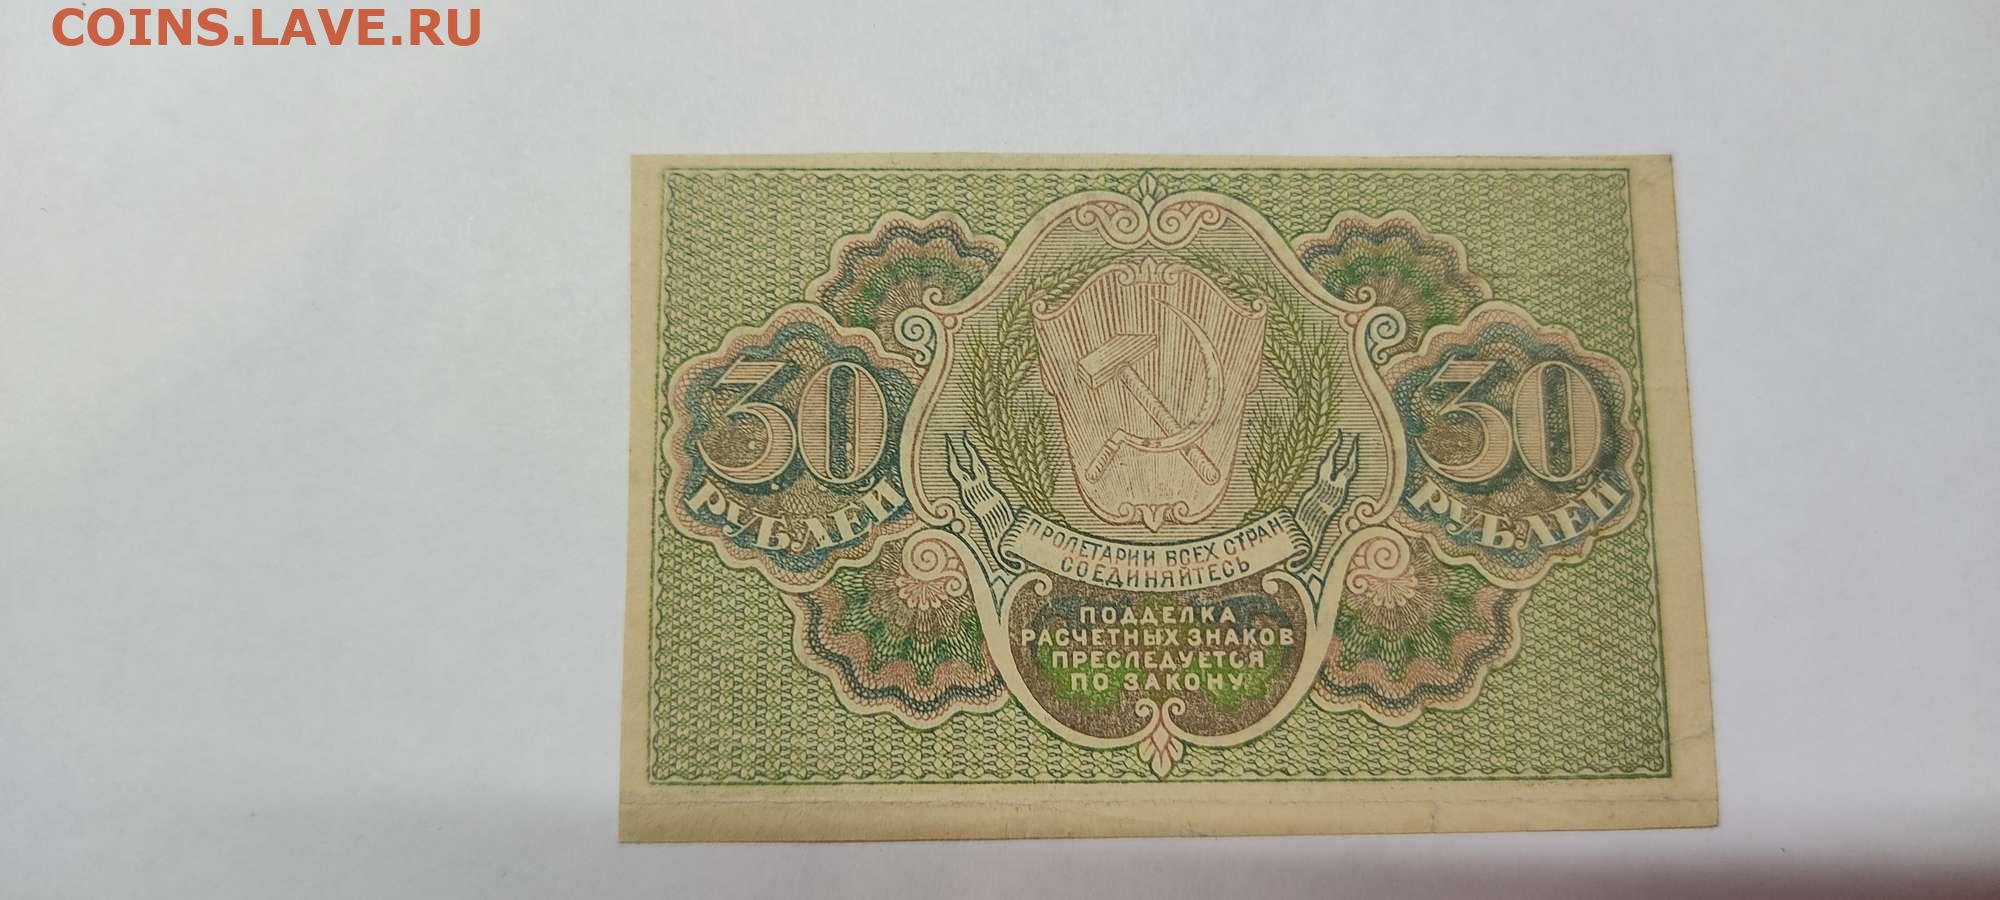 17 60 в рублях. Расчетный знак 30 рублей. Расчетный знак монеты. 60 Рублей 1919 лист. 30 Рублей.